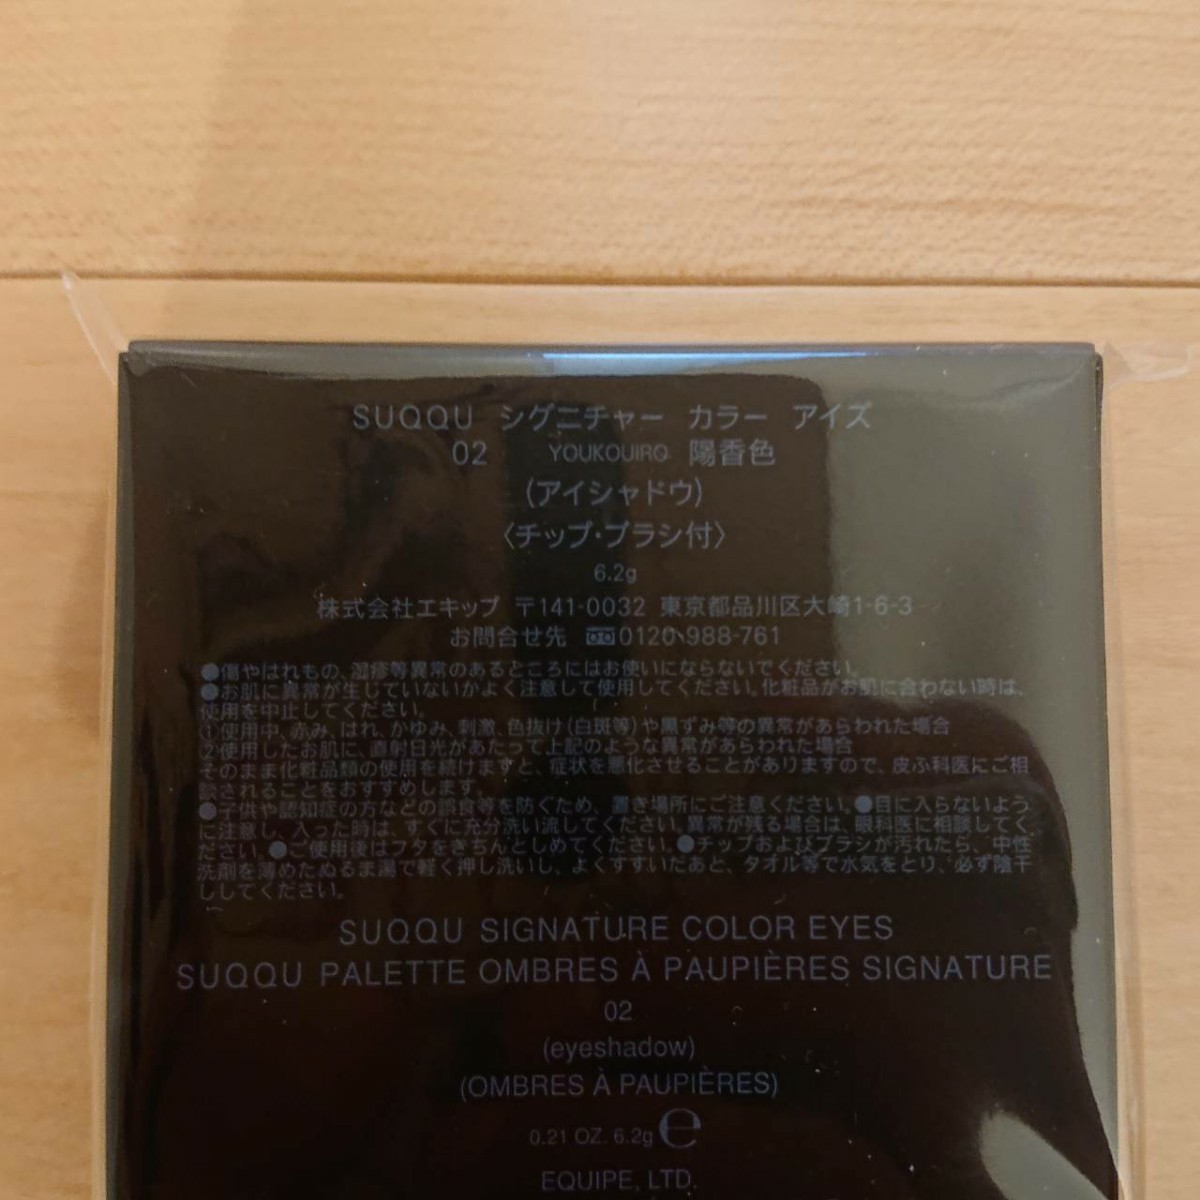 新品 SUQQU シグニチャー カラー アイズ02 陽香色 -YOUKOUIRO